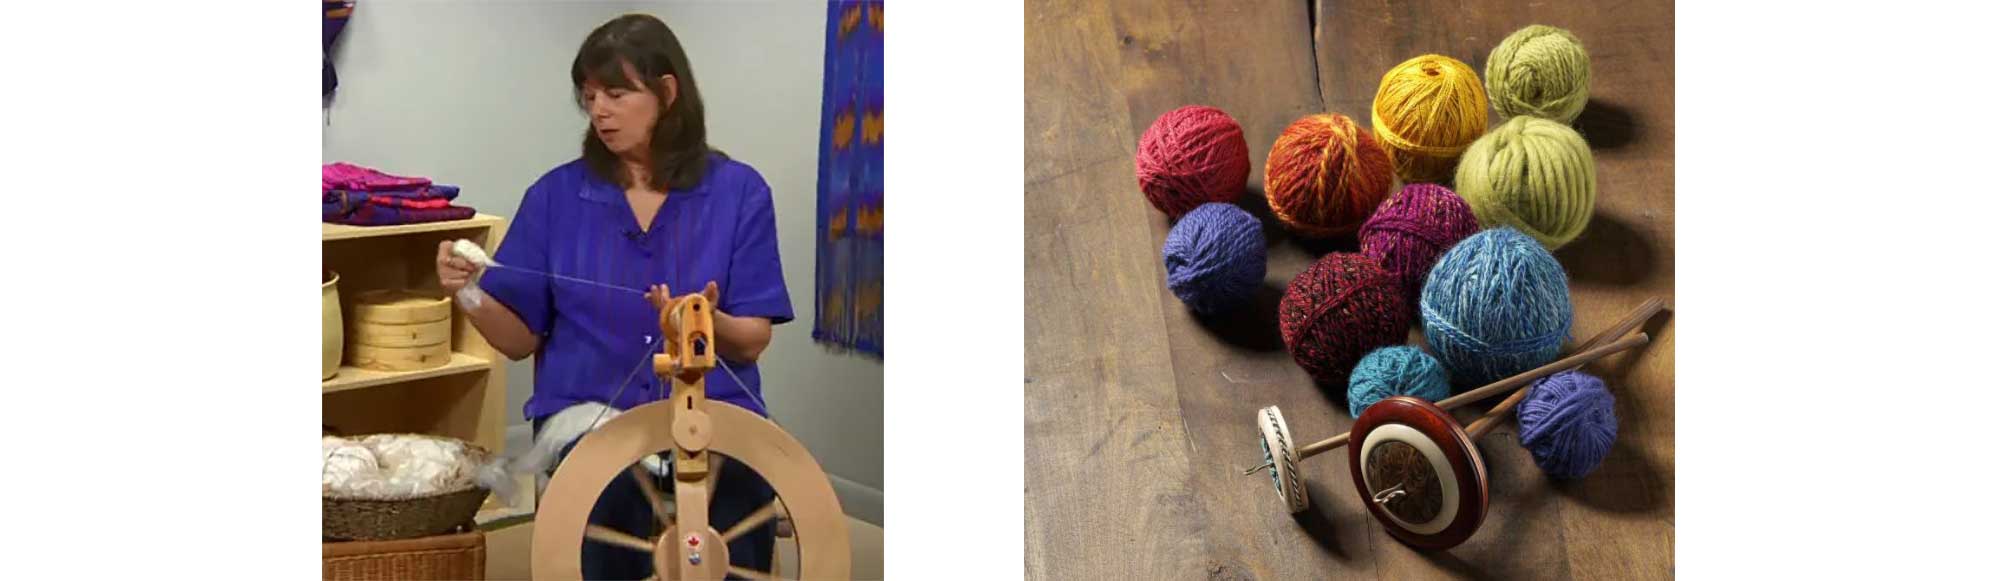 Sara-and-yarn-balls